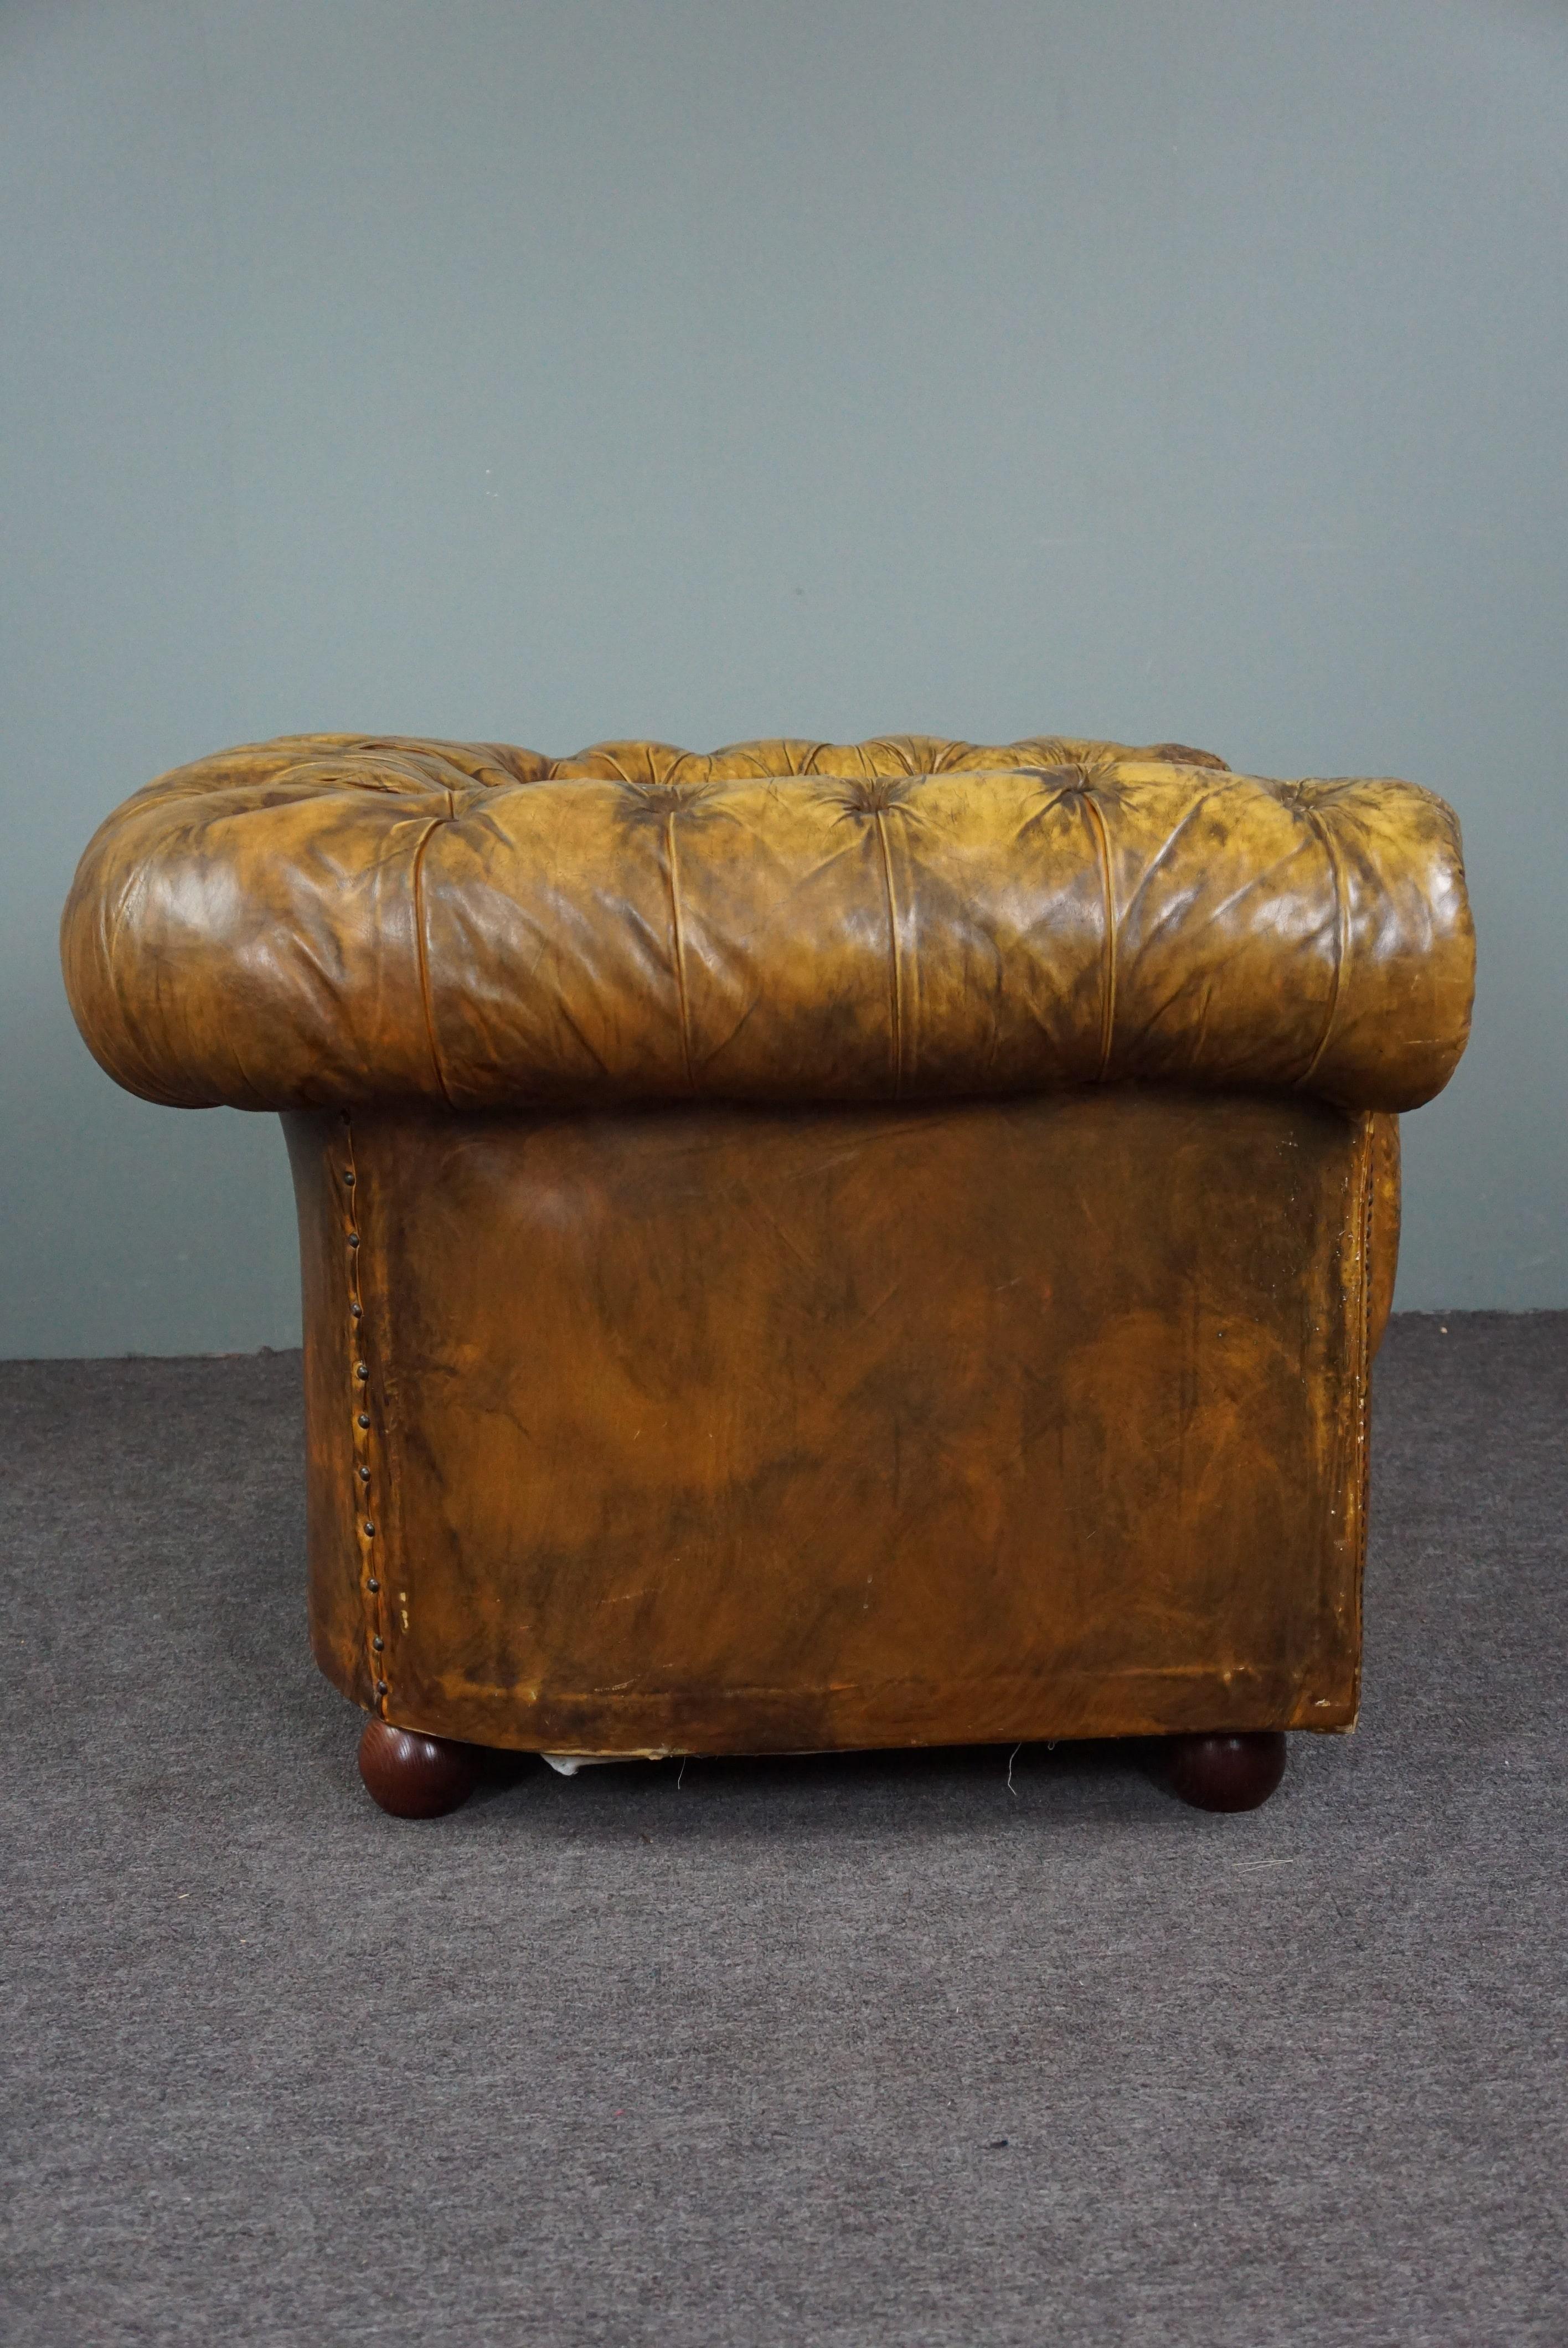 Nous vous proposons ce fauteuil Chesterfield merveilleusement assis, dont la patine et la couleur lui confèrent une apparence étonnante.

Cet imaginatif fauteuil Chesterfield patiné a un dossier et des accoudoirs paddés, un piètement à ressorts